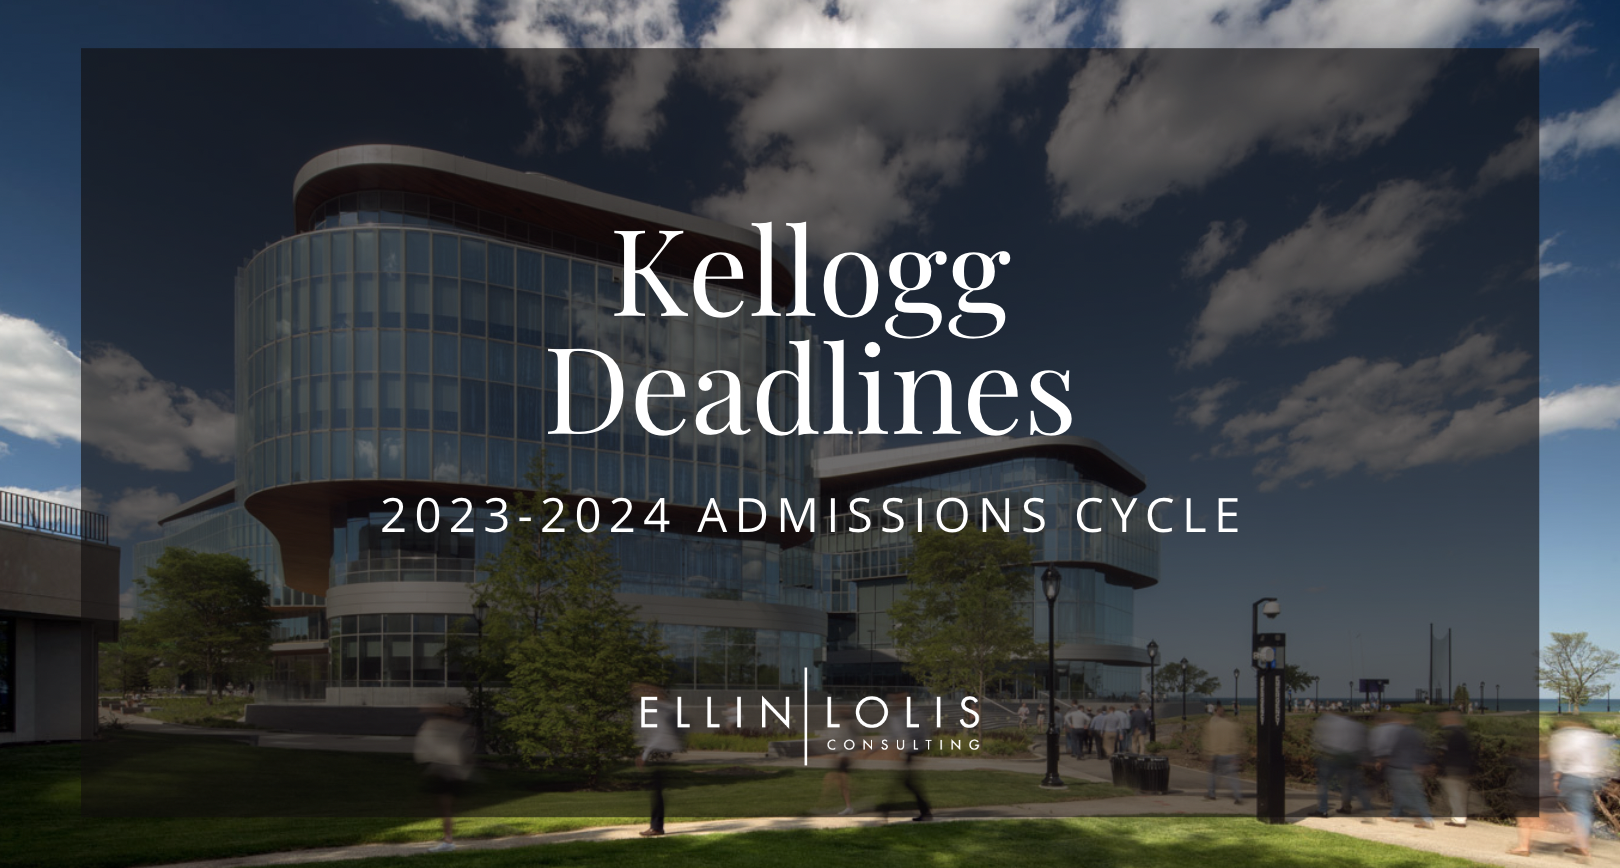 Kellogg MBA Deadlines for 2023-2024